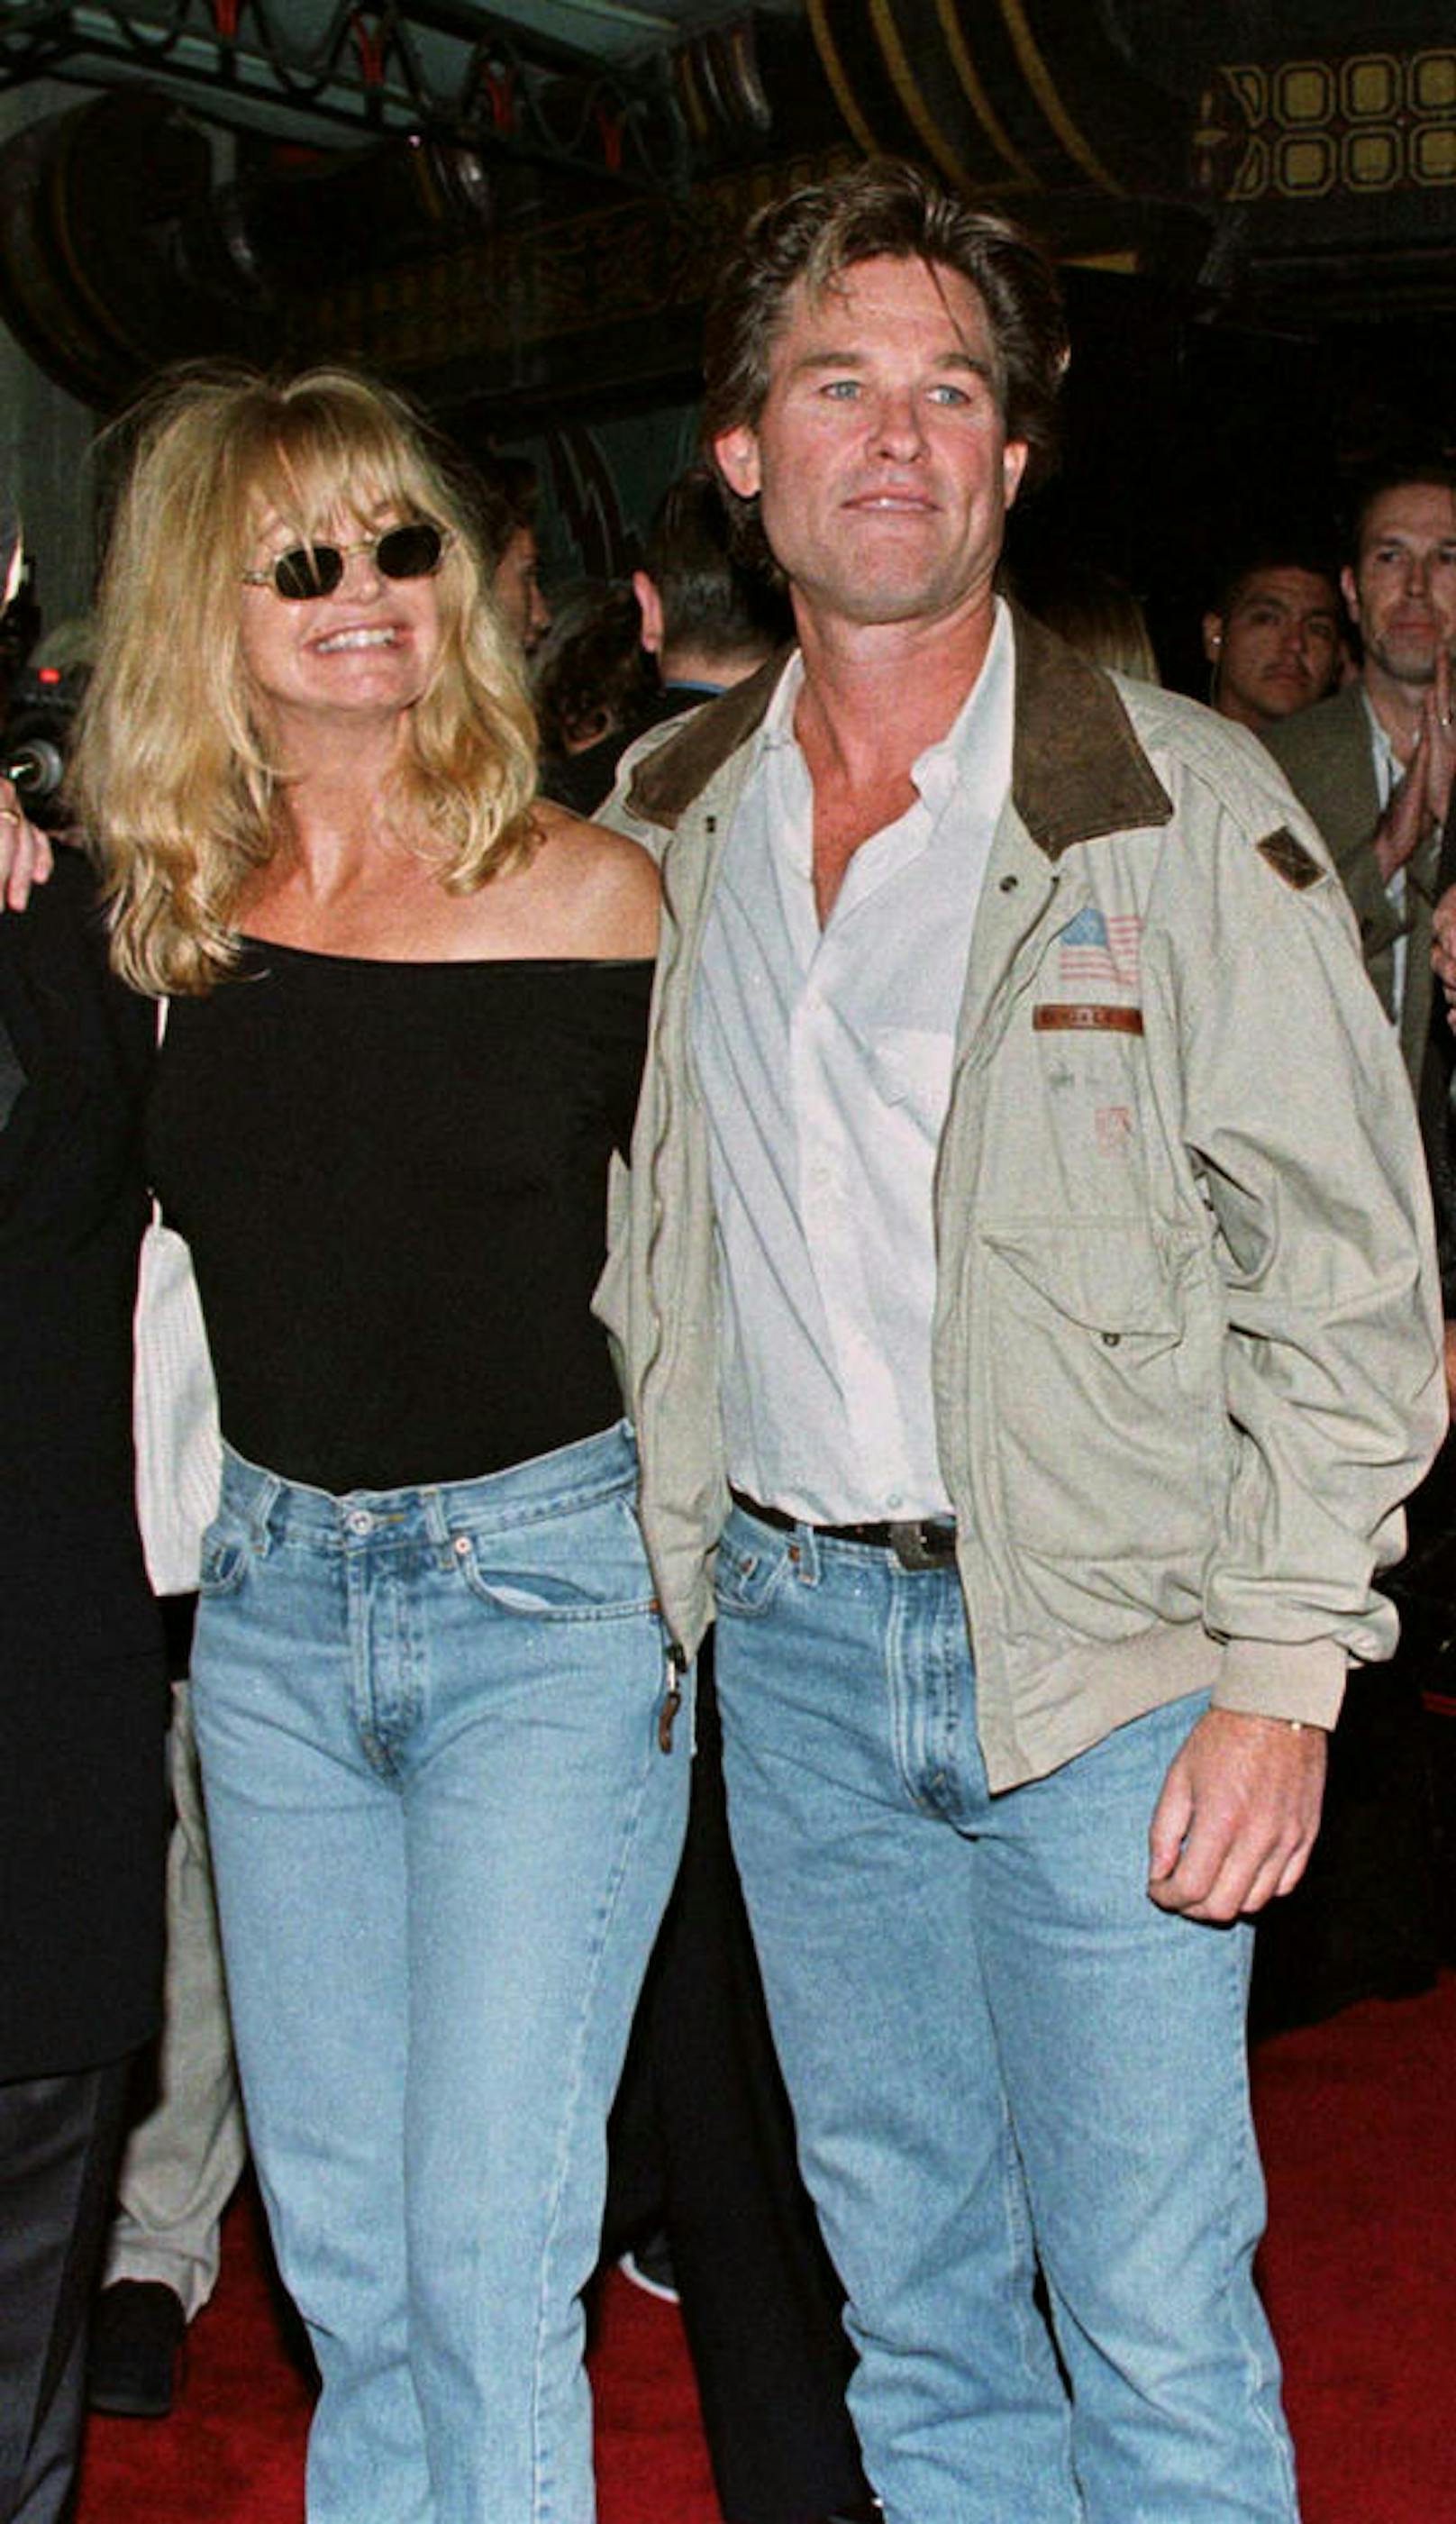 Kurt Russell und Goldie Hawn bei der Premiere von "Soldier" in Hollywood.